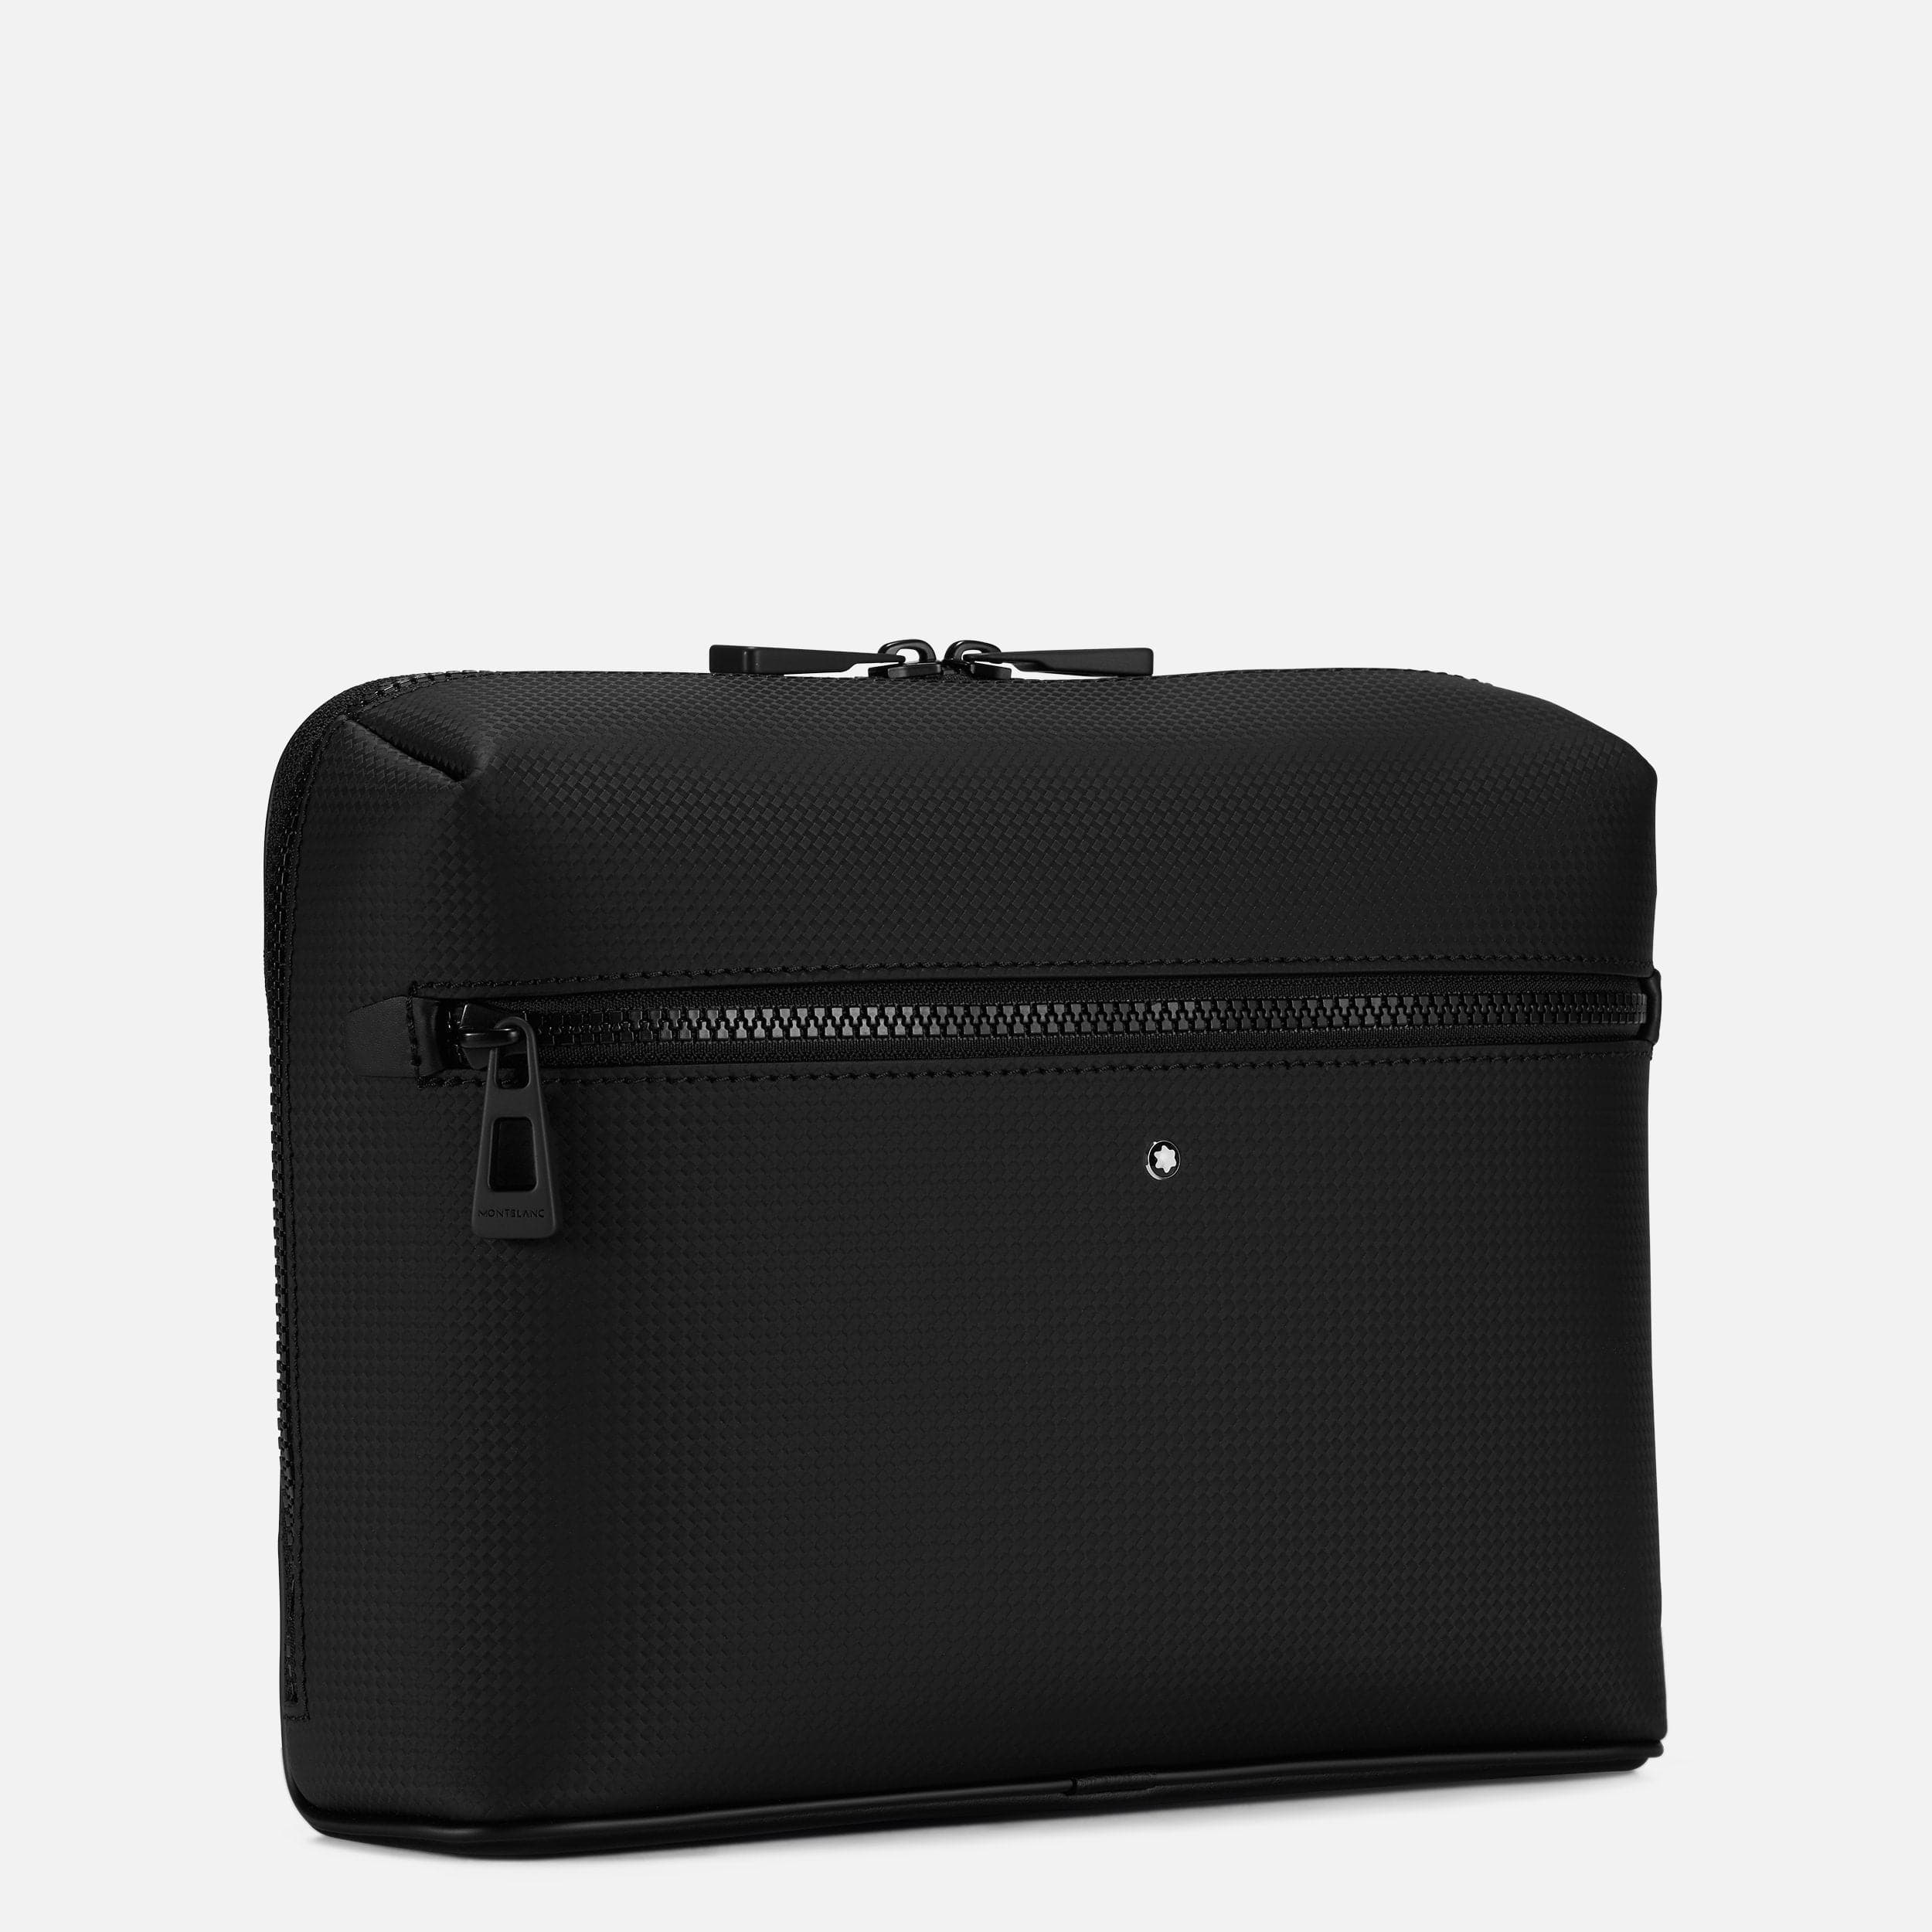 TOTTO Unisex_Adult KOALA KAMAL Belt Bag, Black (Black), one size :  Amazon.ae: Sporting Goods